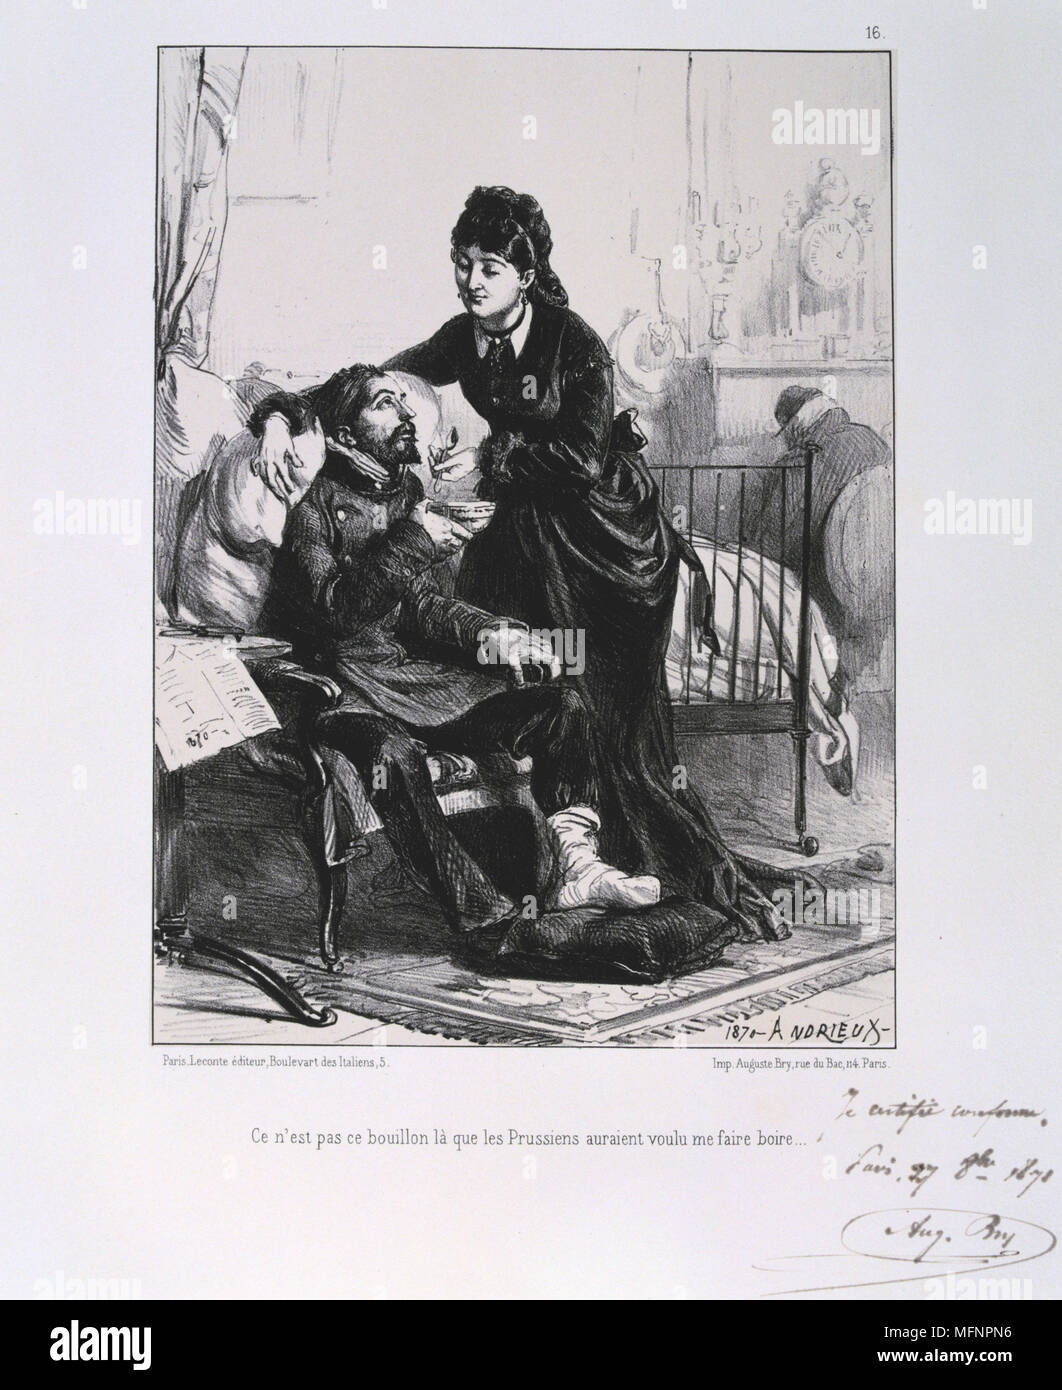 Guerre franco-prussienne de 1870-1871 : un soldat blessé est soigné et nourri. À partir d'une série de lithographies de Clement Août Andrieux sur les Gardes Nationales. Banque D'Images